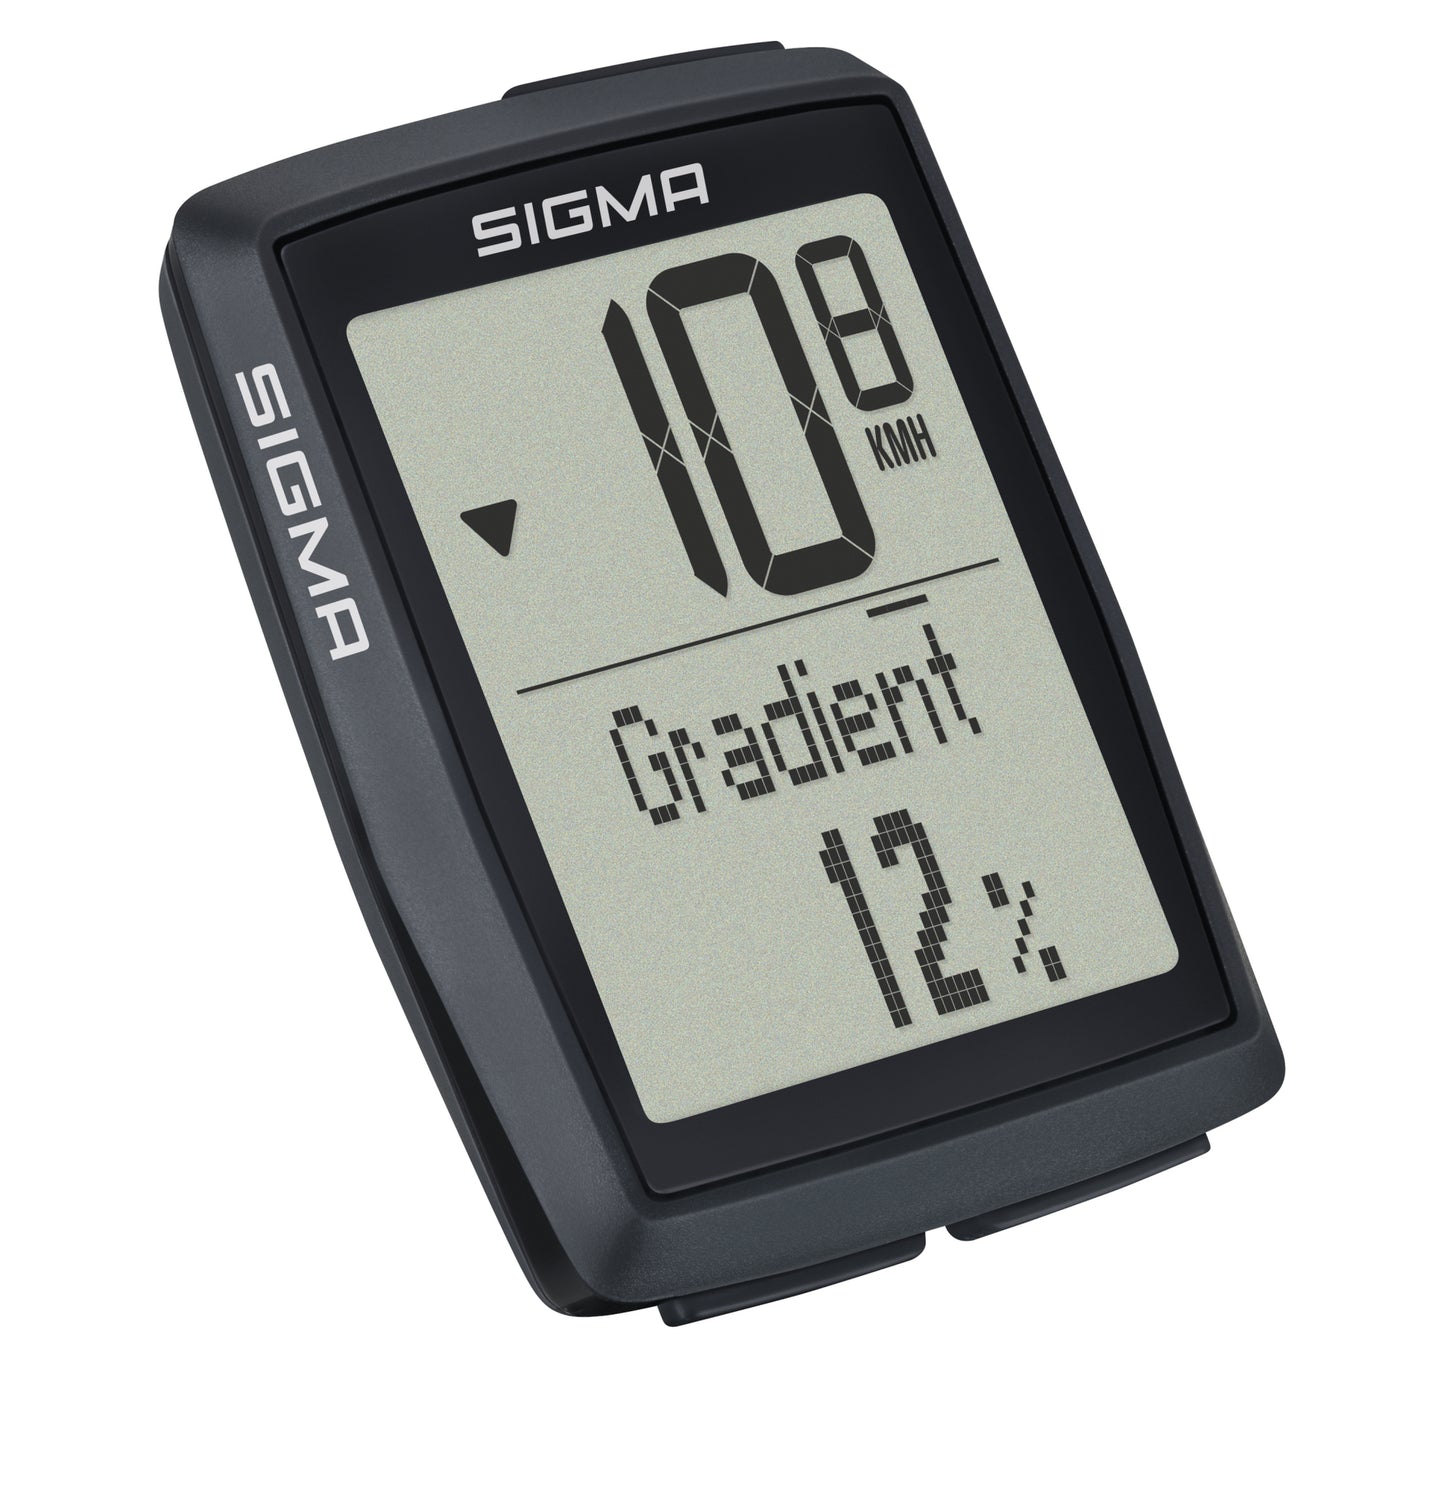 Sigma Bicycle Computer BC 14.0 WL STS con medición de altitud y sensor de frecuencia de pedal